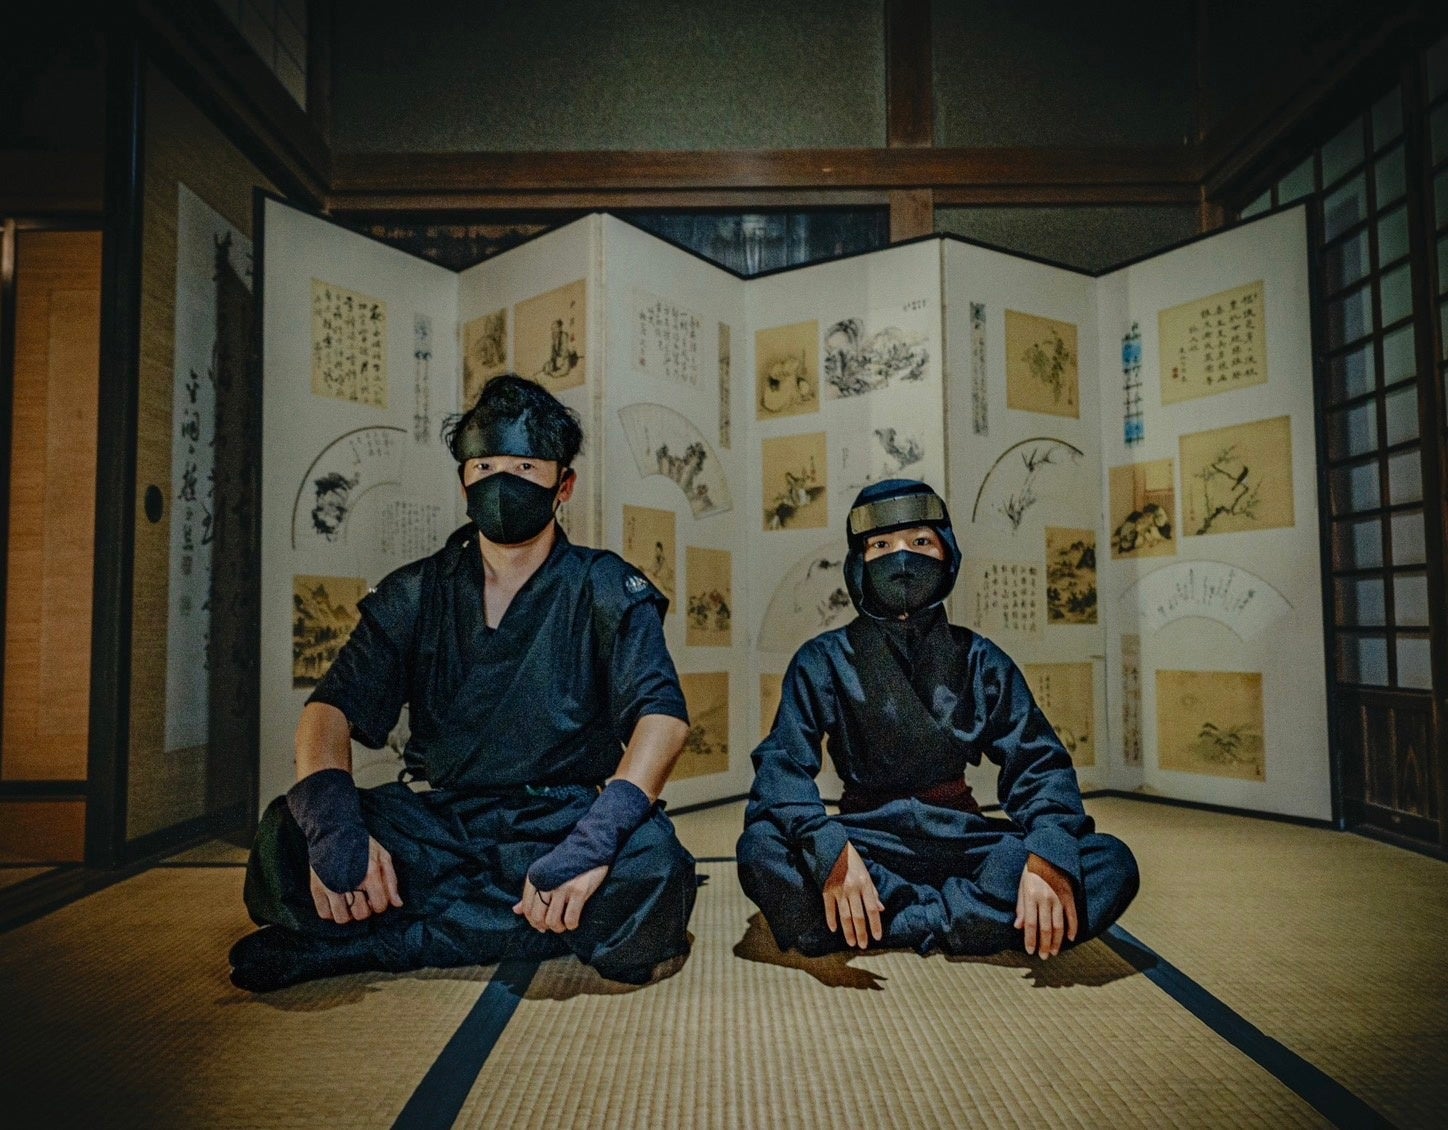 2024年5月、加茂荘花鳥園に忍者がやってくる！Ninjas come to Kamoso Kachoen in May 2024!